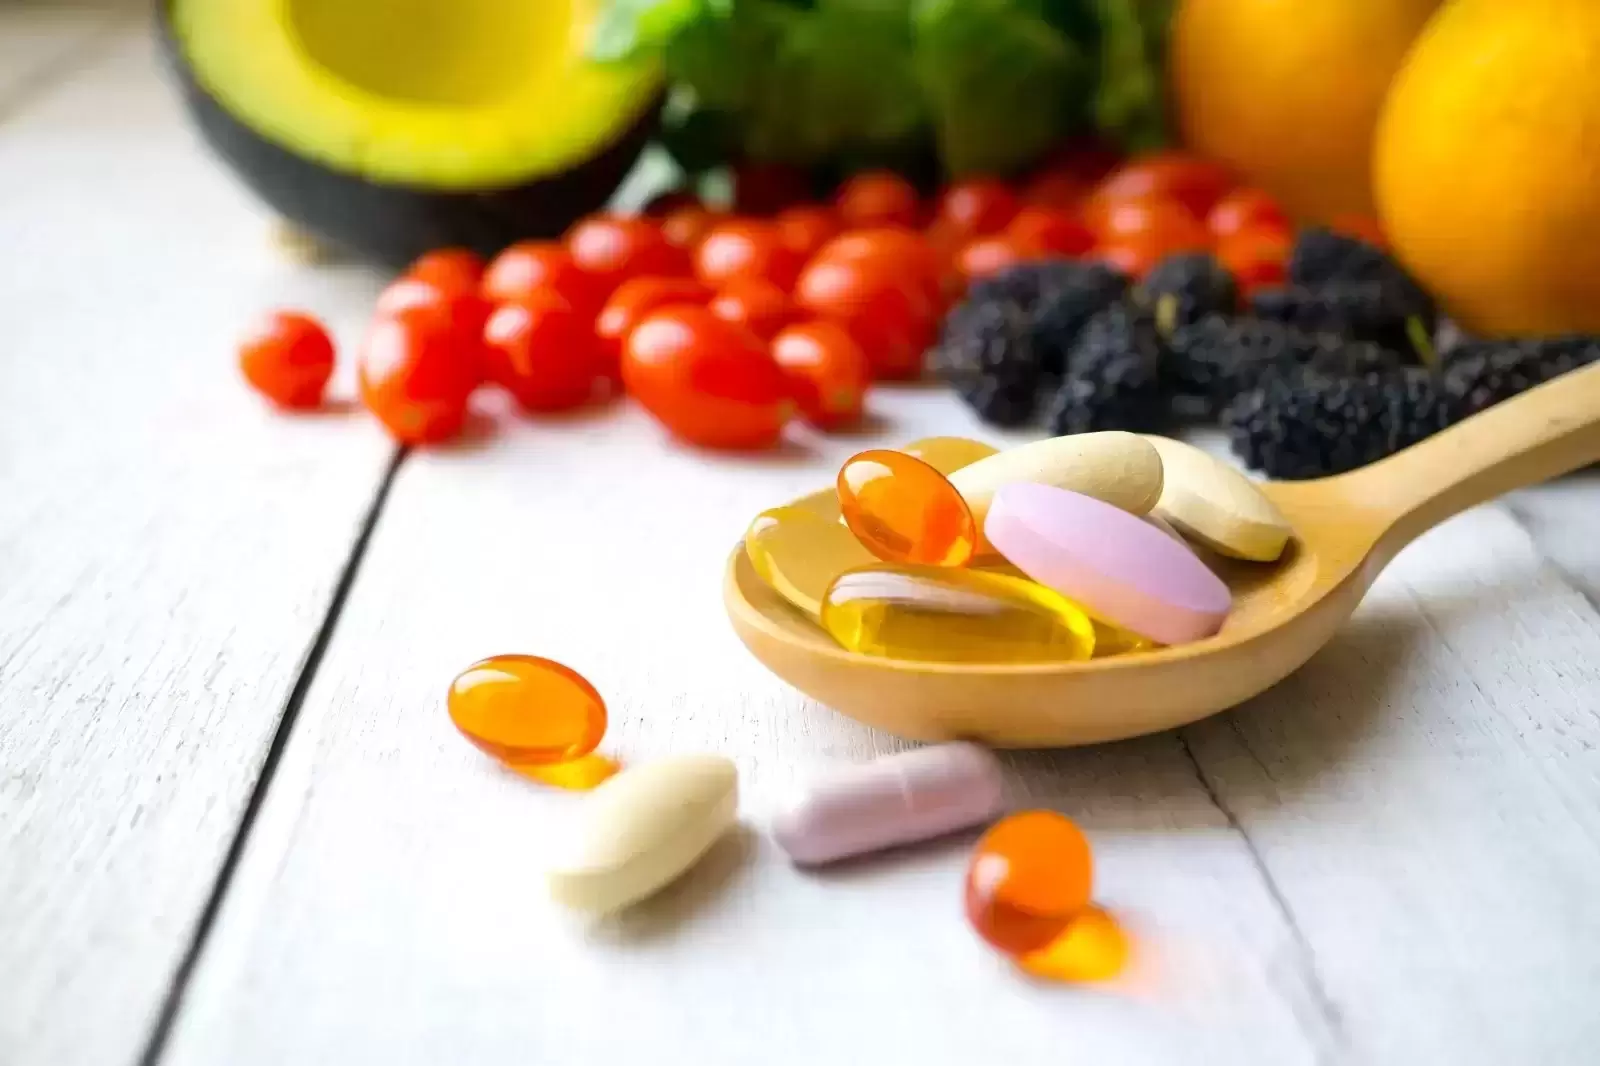 5 maistinės medžiagos ir vitaminai būtini imuninei sistemai